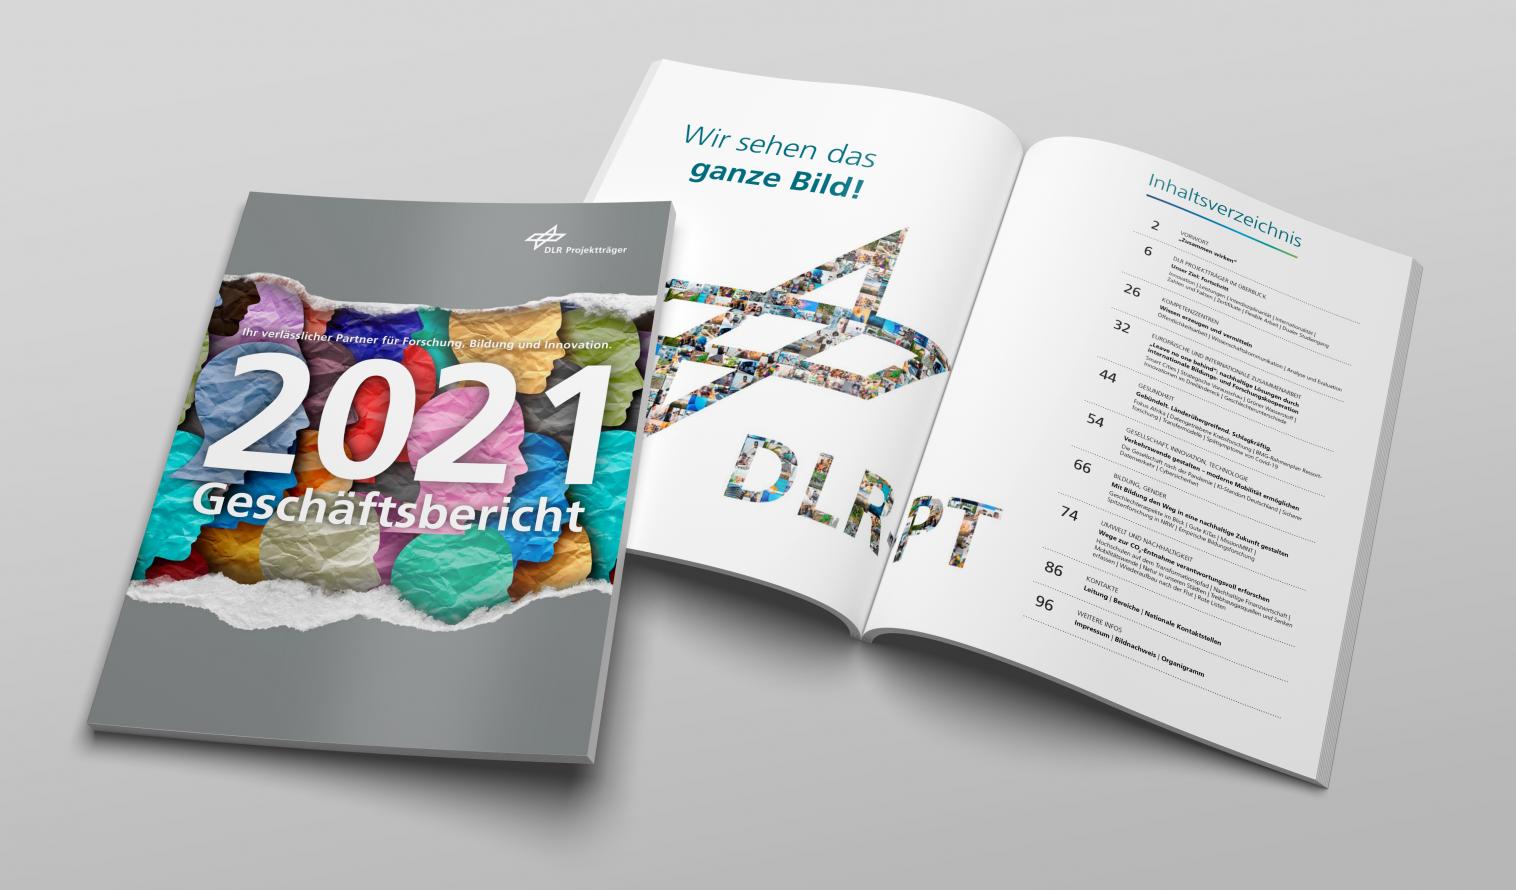 Geschäftsbericht 2021 Cover plus Inhaltsverzeichnis